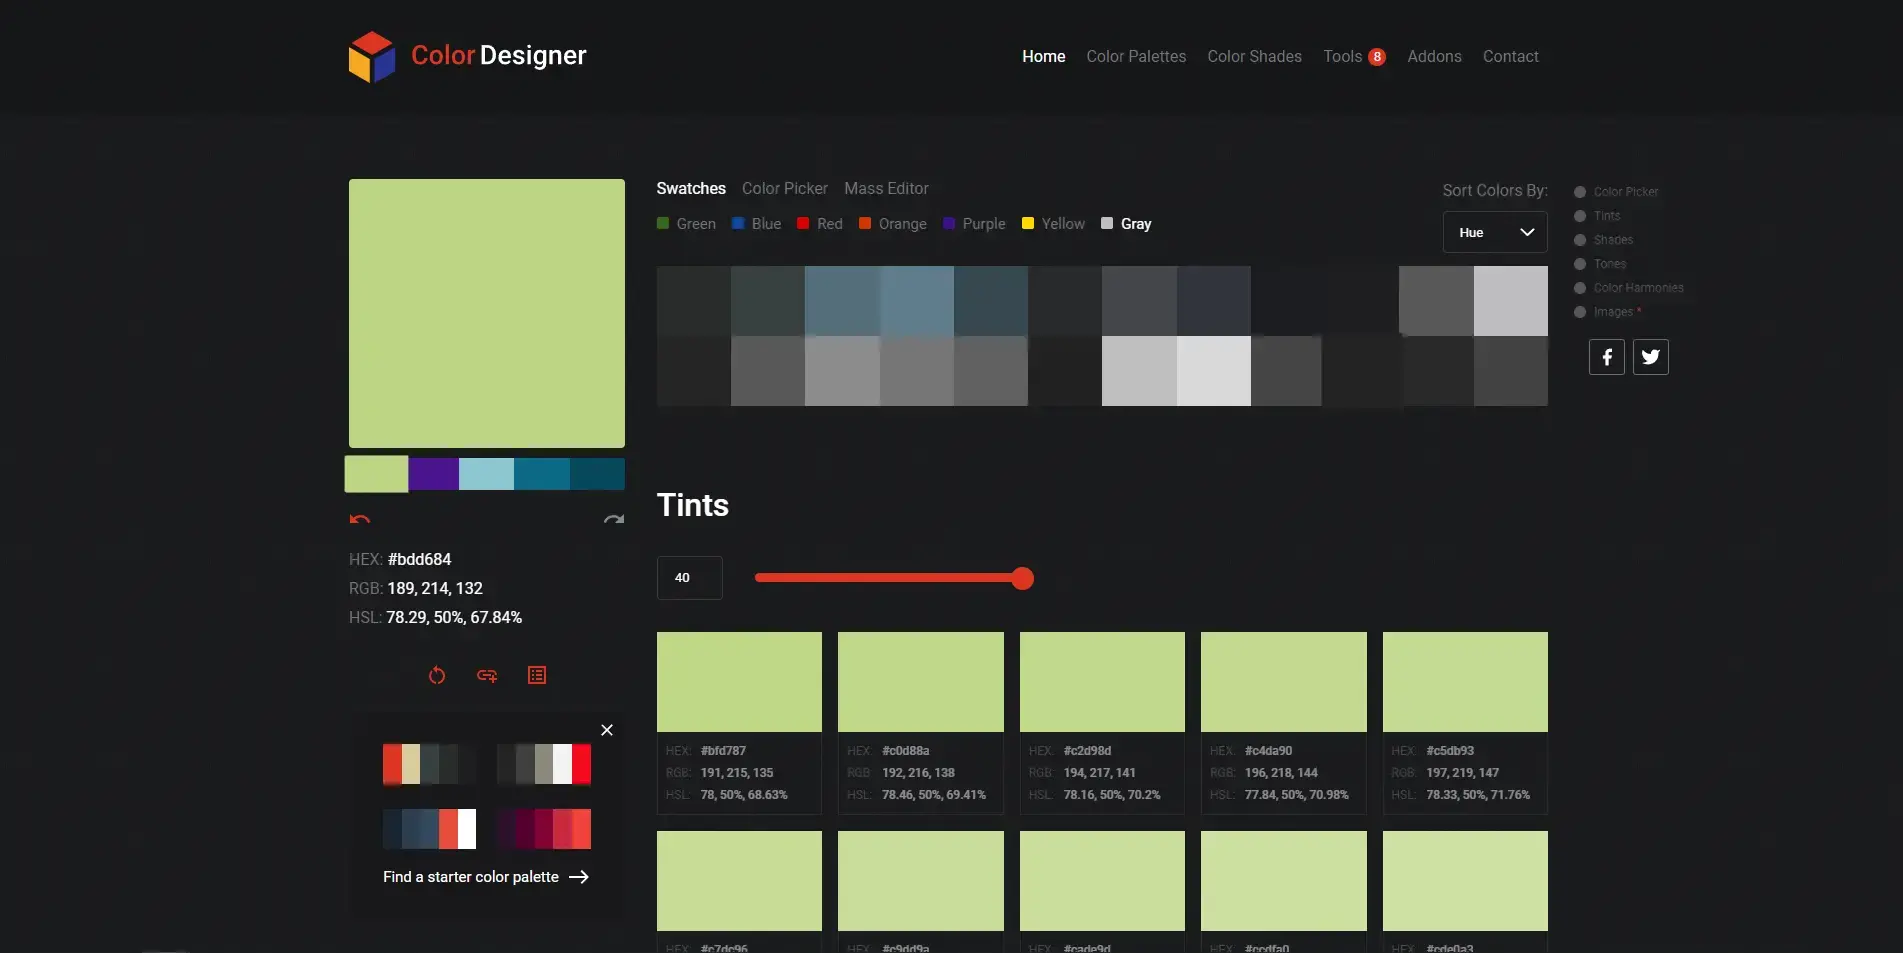 Blogduwebdesign outils design generateurs palettes couleurs en ligne colordesigner